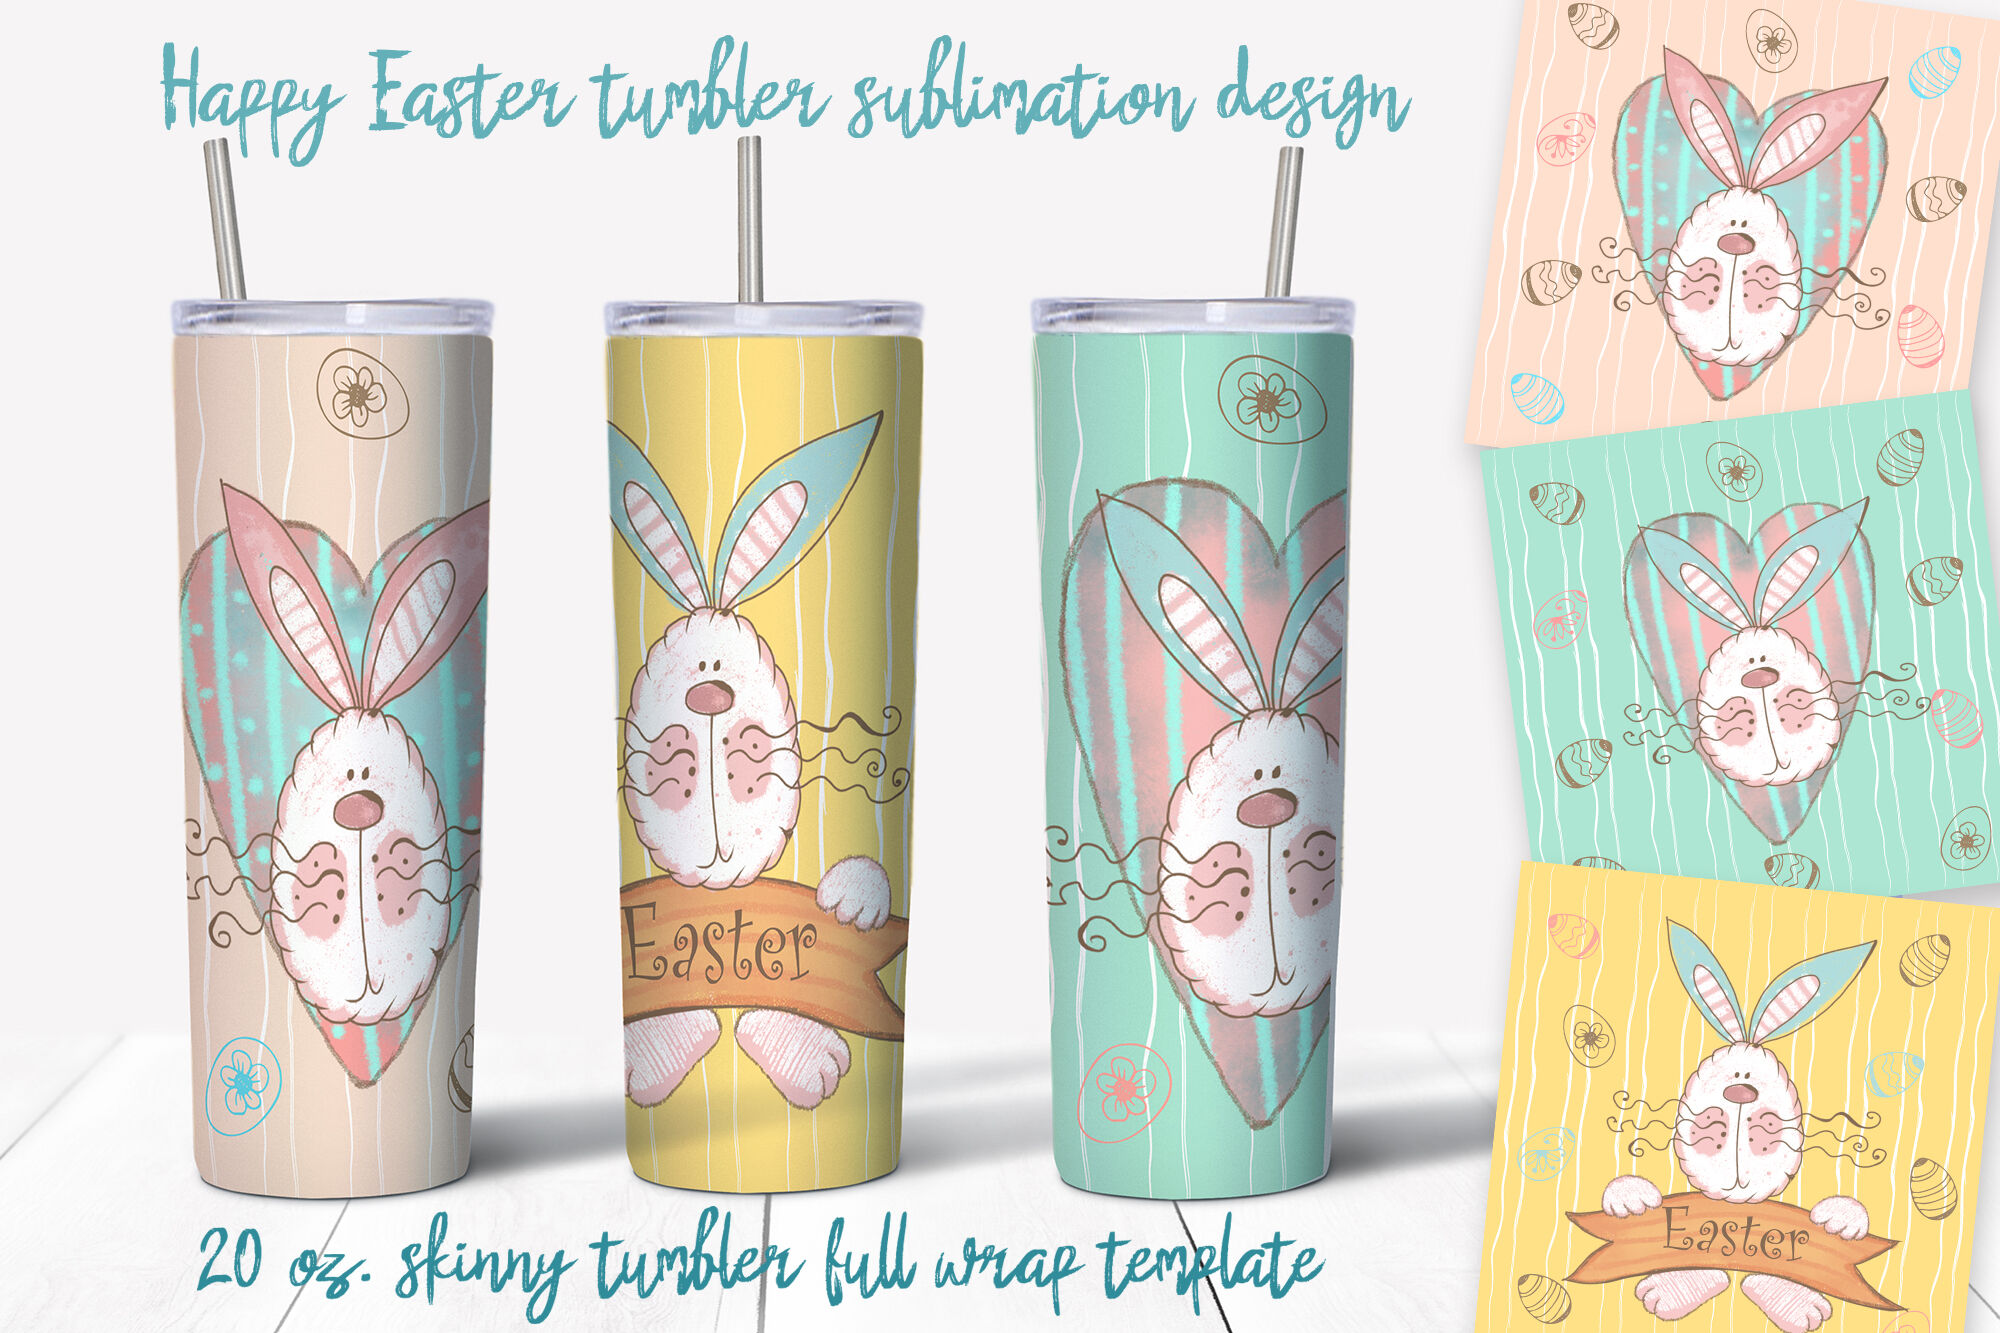 Skinny tumbler Png. Happy Easter Png. Easter sublimation design